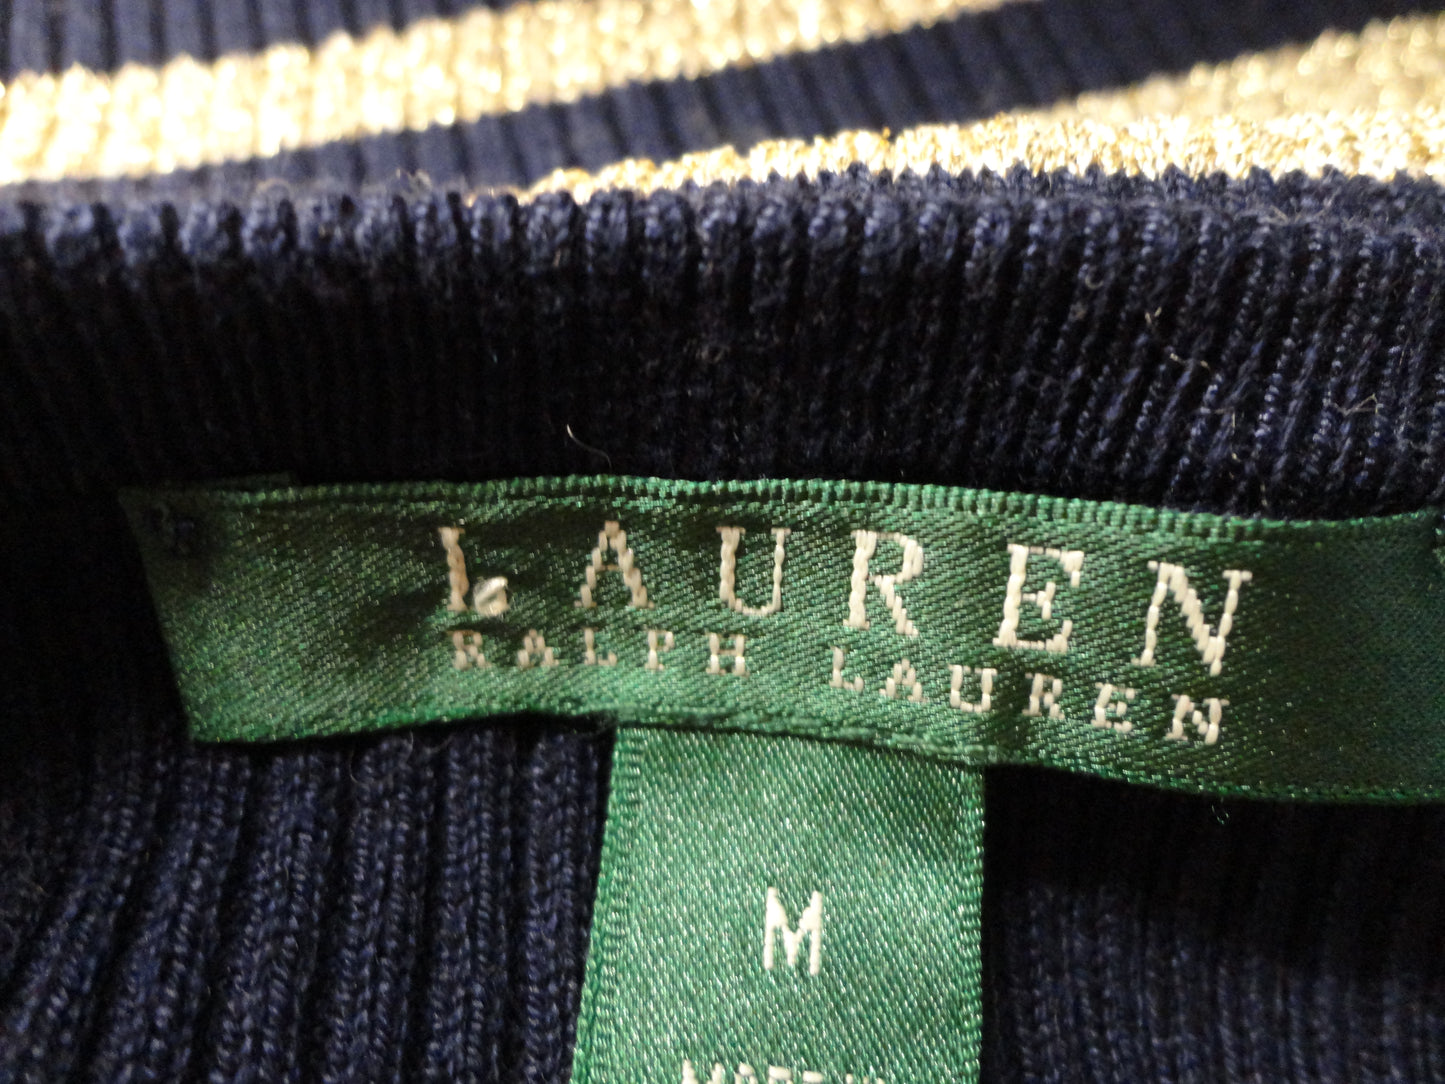 Ralph Lauren (gr) Sweater Sleeveless Blue & Gold M SKU 000291-15